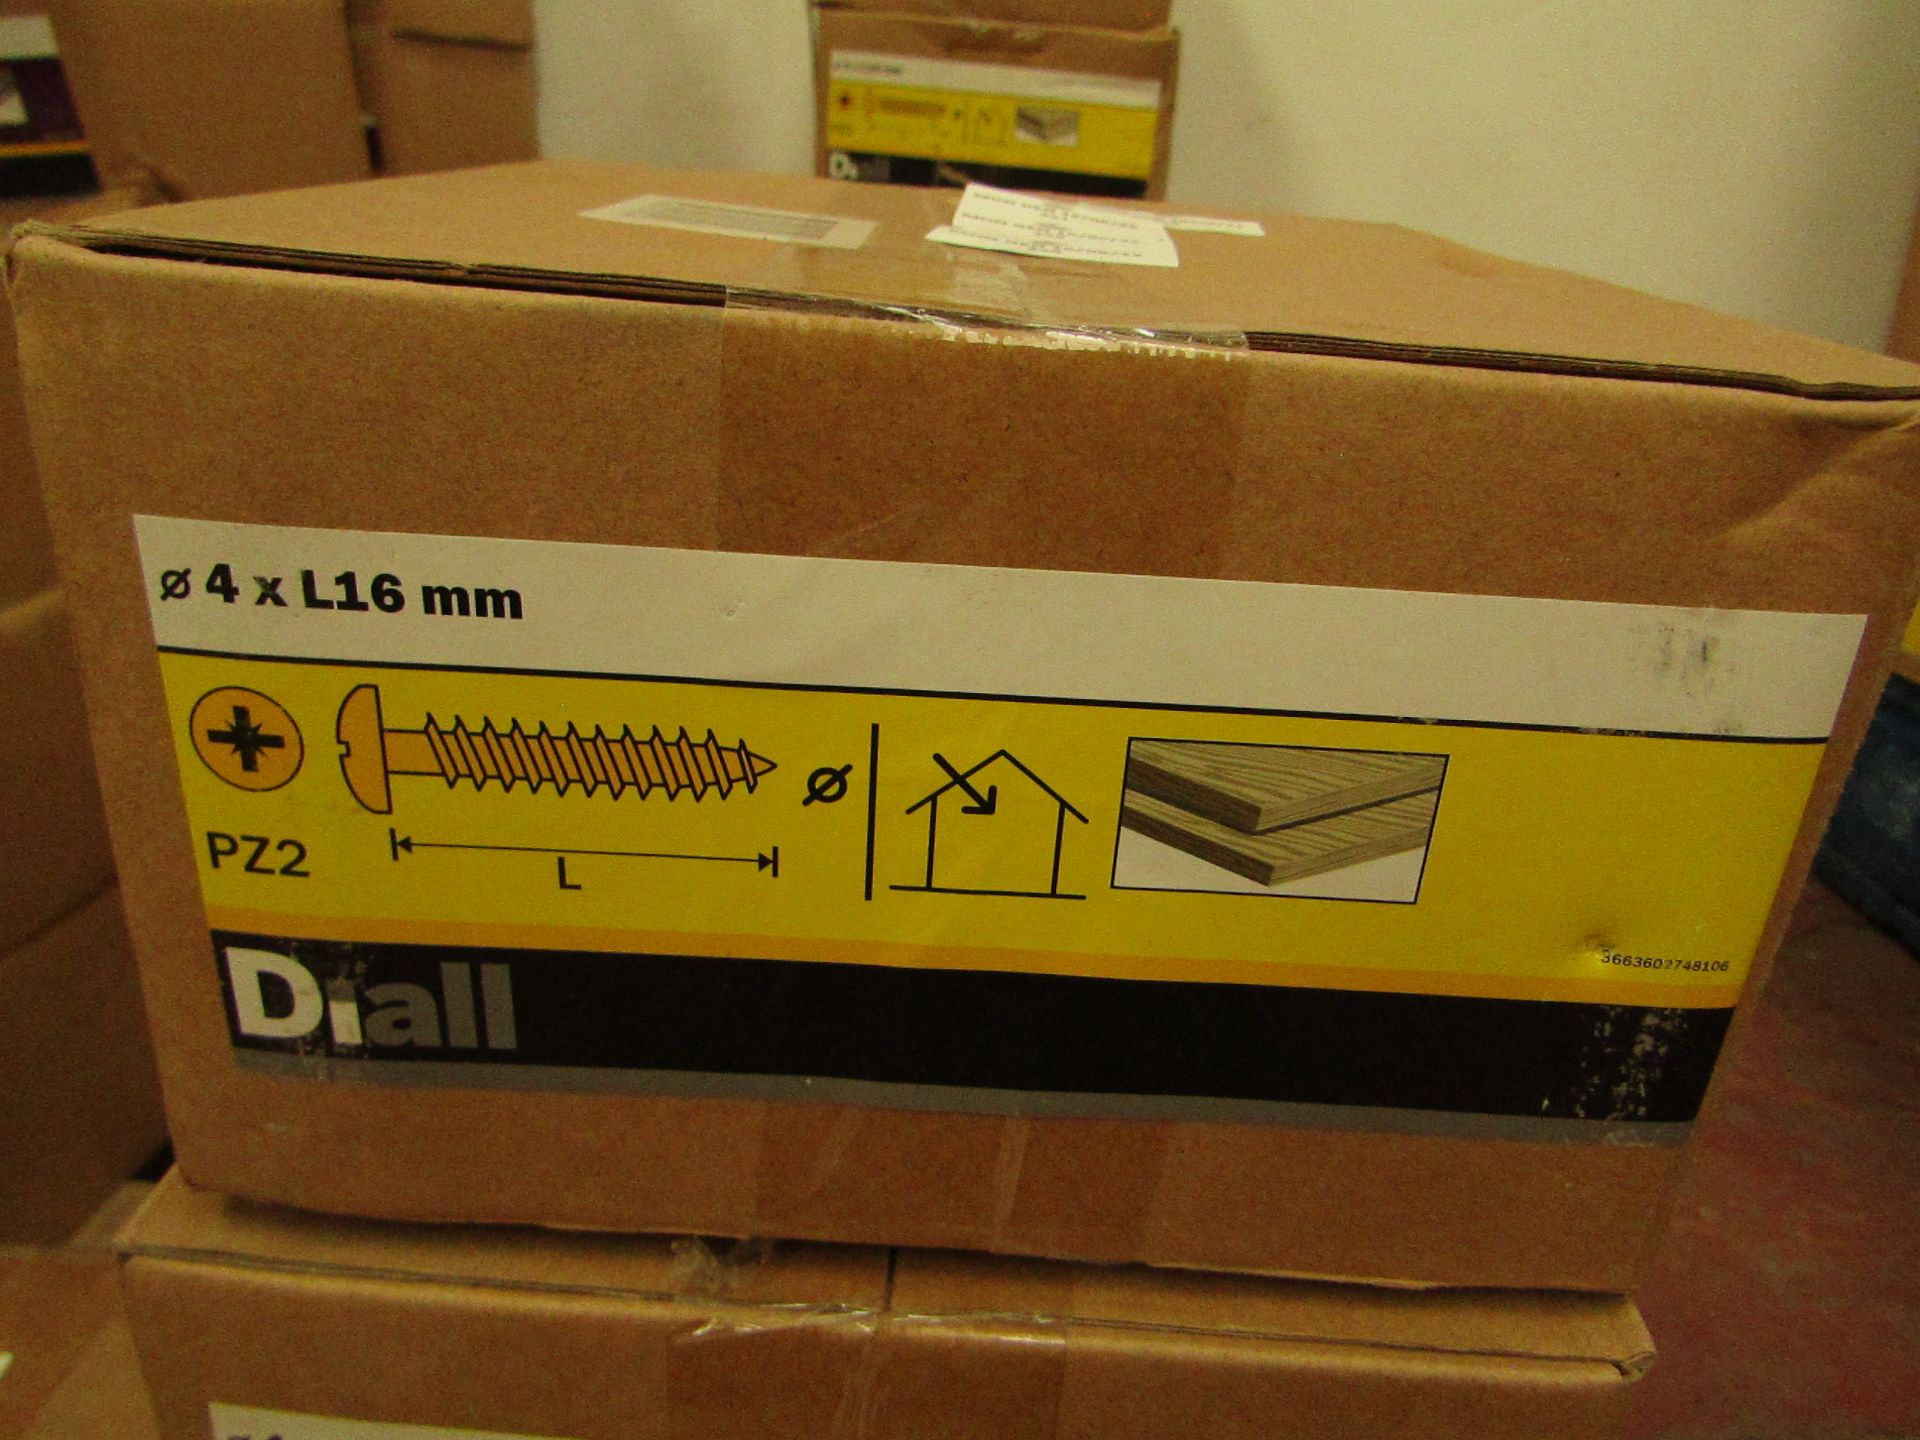 Diall - 4 x L16 mm Wood Screws ( PZ2 ) - 4KG Box - New & Boxed.